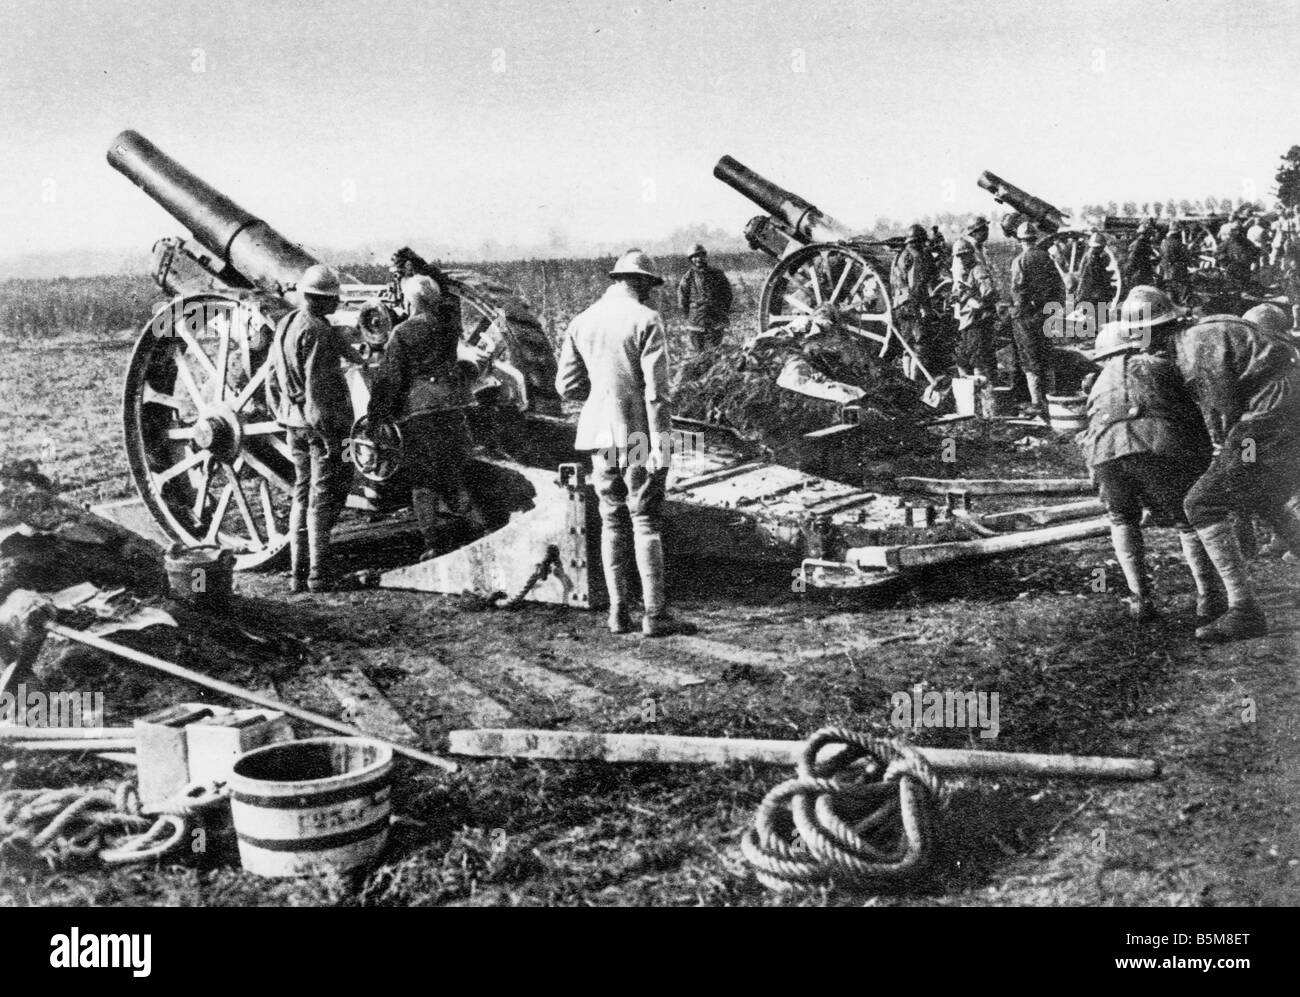 2 G55 F1 1917 1 Schlacht an der Somme 1917 Artillerie Geschichte Weltkrieg eine Frankreich Schlacht an der Somme Juni 1917 französische Artillerie m Stockfoto